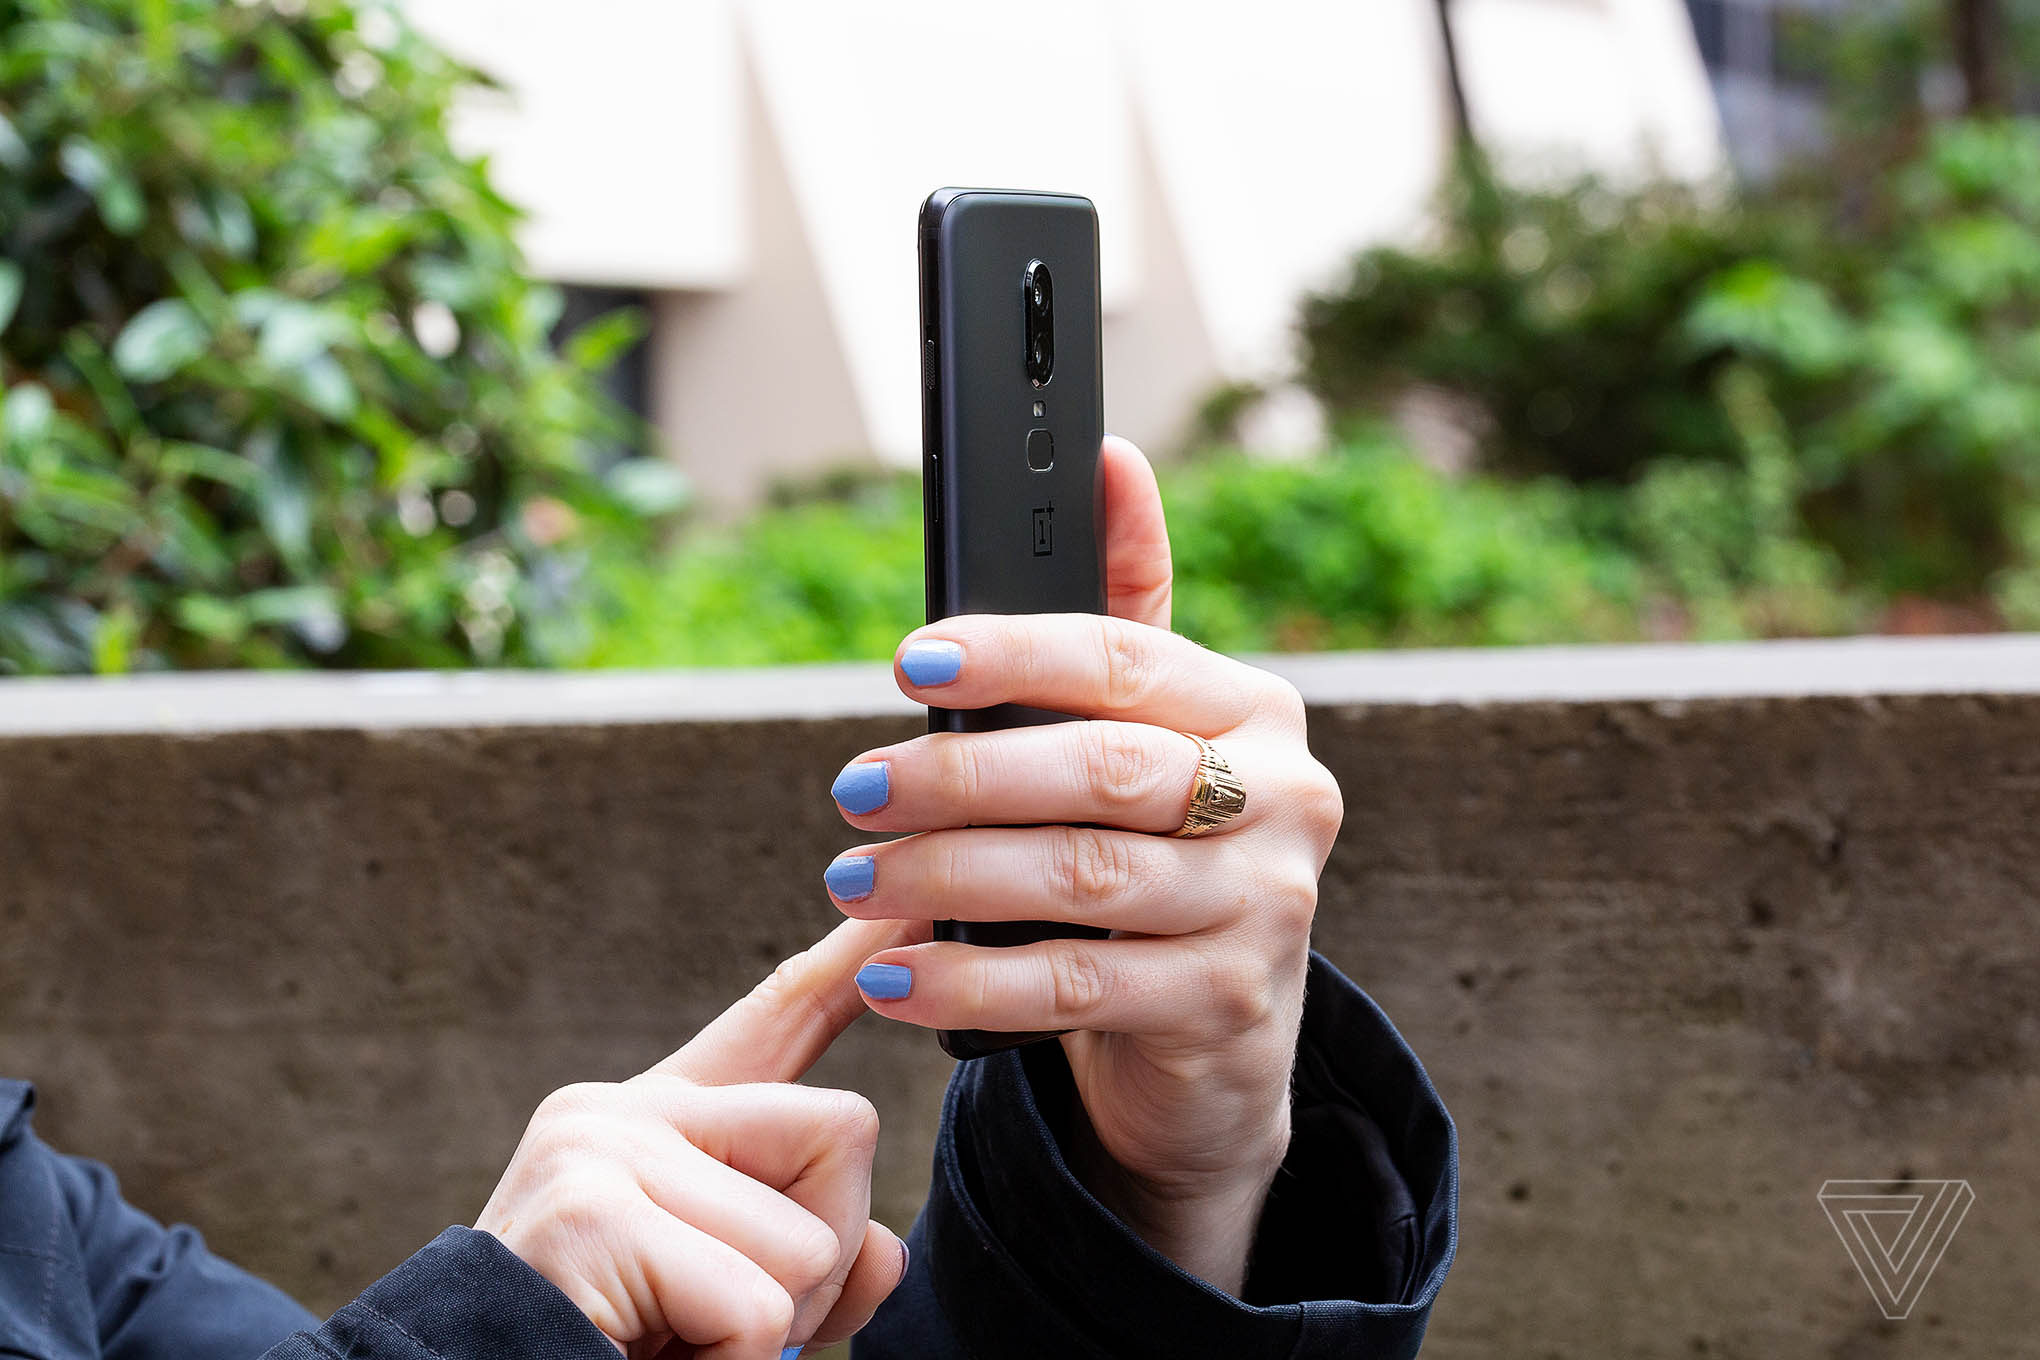 Cận cảnh OnePlus 6:
Smartphone màn hình tai thỏ, vi xử lý Snapdragon 845 giá chỉ
529 USD